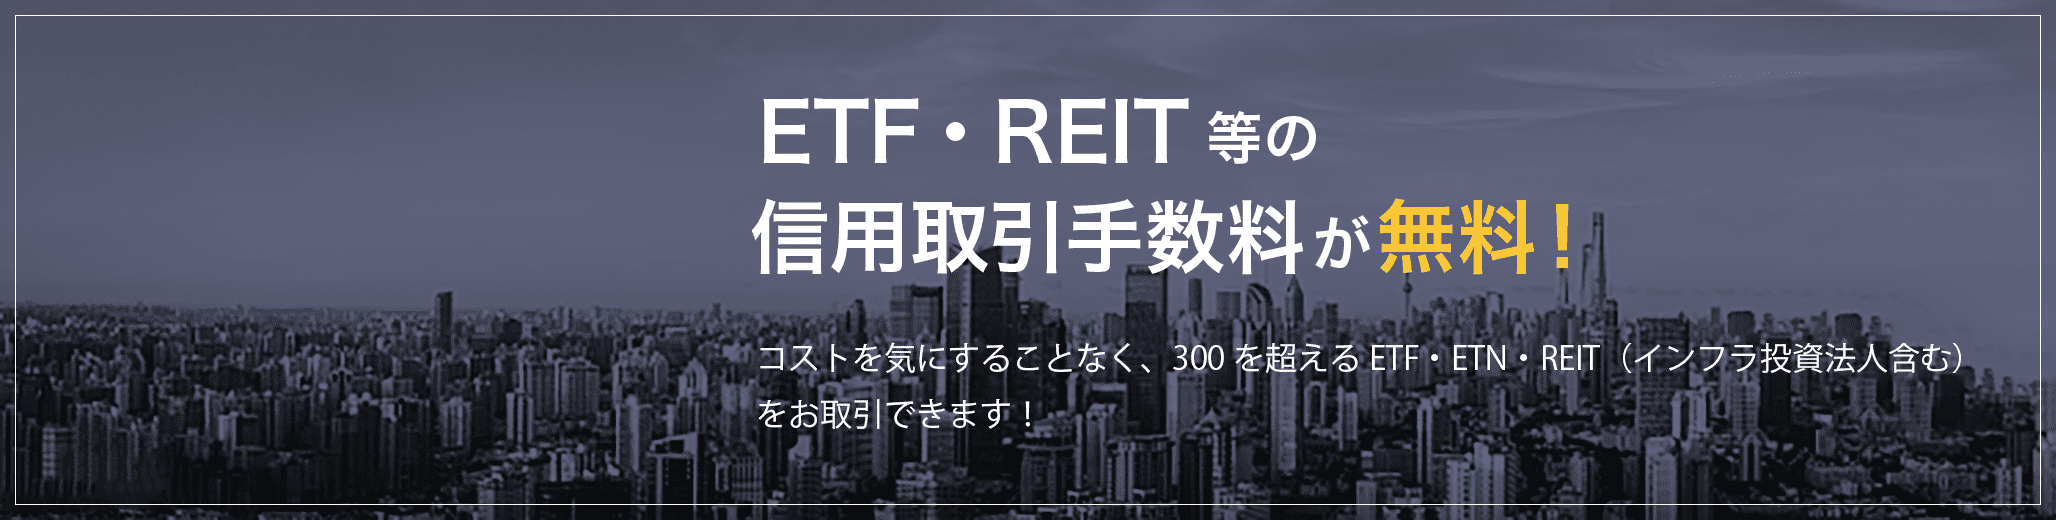 ETF・REIT等の信用取引手数料は無料！コストを気にすることなく、300を超えるETF・ETN・REIT（インフラ投資法人含む）をお取引できます！